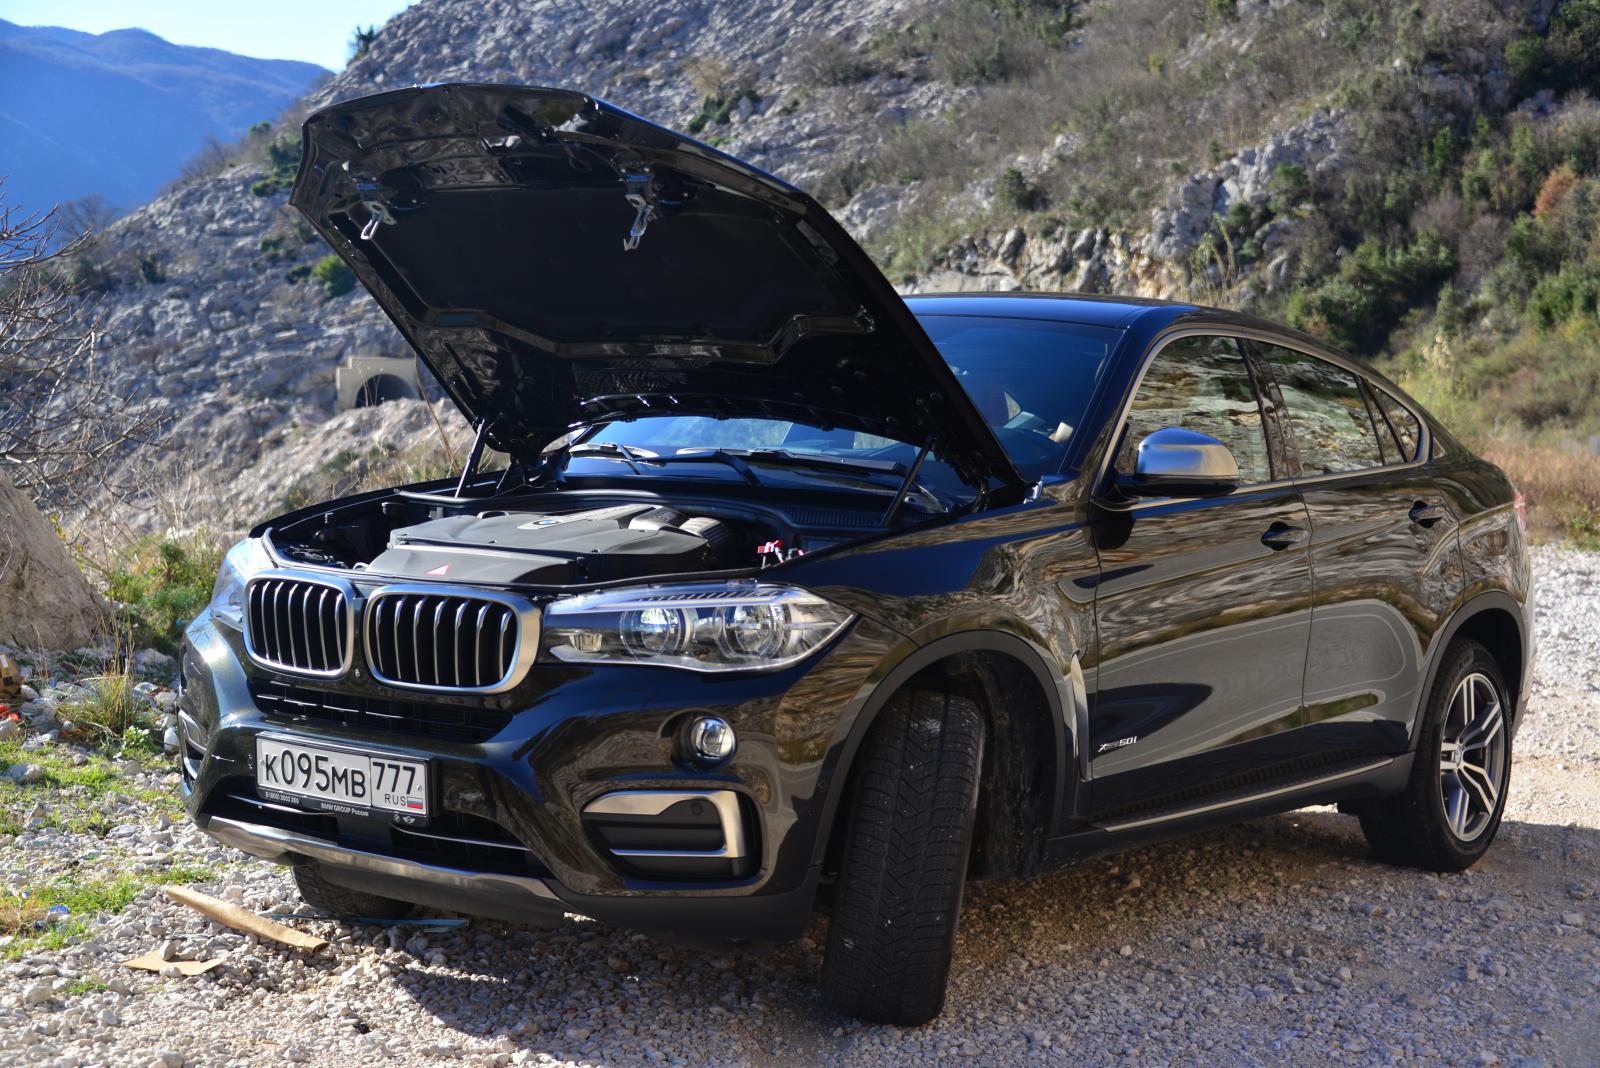 Весной 2015 года к линейке двигателей добавится два новых варианта: BMW X6 xDrive50i с рядным шестицилиндровым бензиновым двигателем. 306 л.с. и BMW X6 xDrive40d с рядным шестицилиндровым дизельным двигателем. 313 л.с..